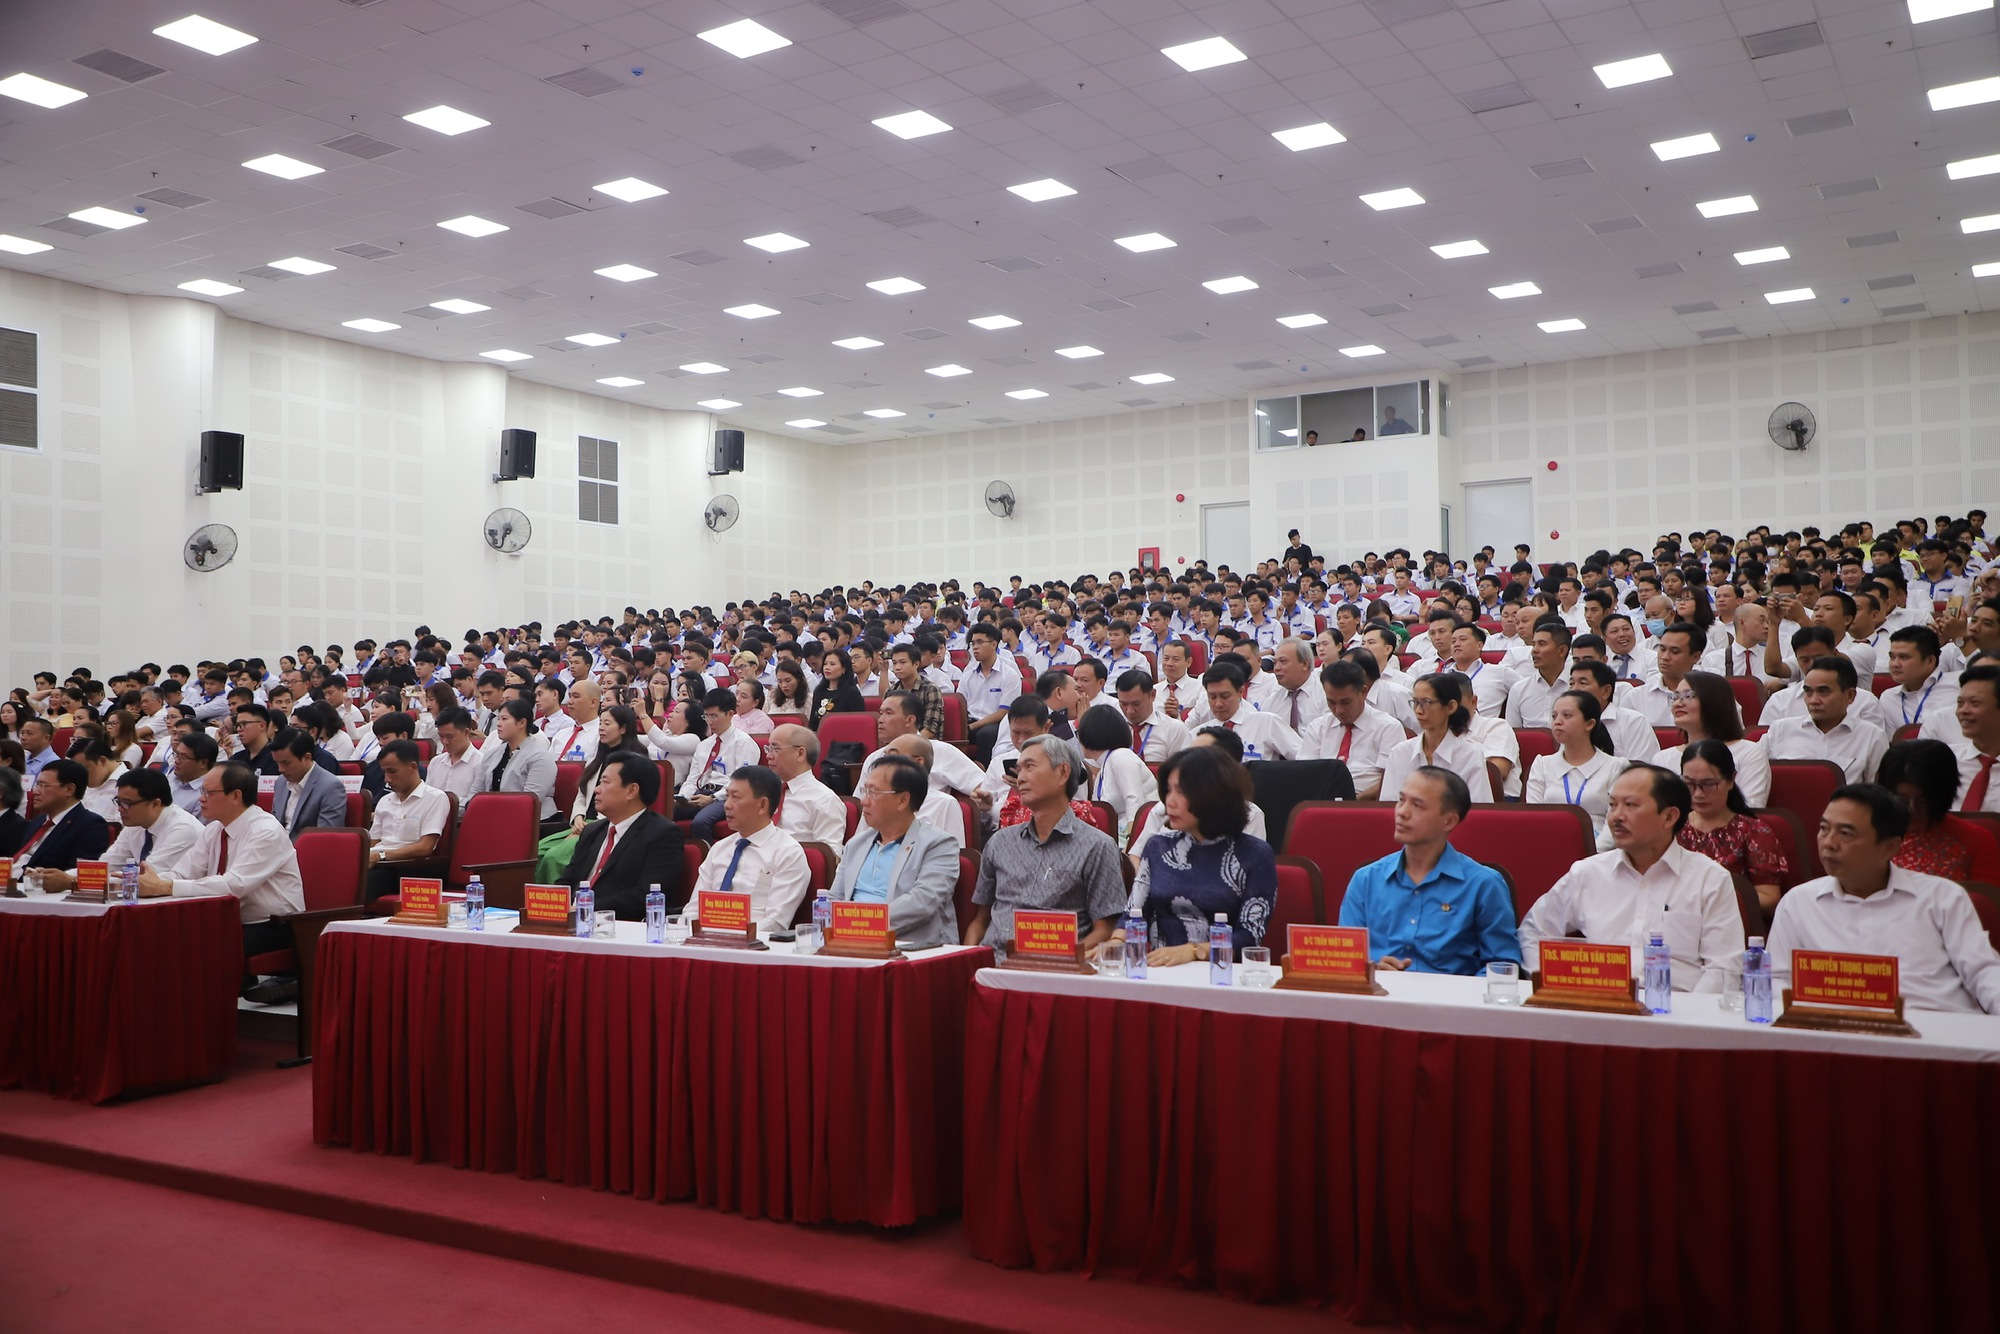 Trường Đại học Thể dục Thể thao TP.HCM đón nhận Chứng nhận kiểm định chất lượng cơ sở giáo dục - Ảnh 4.